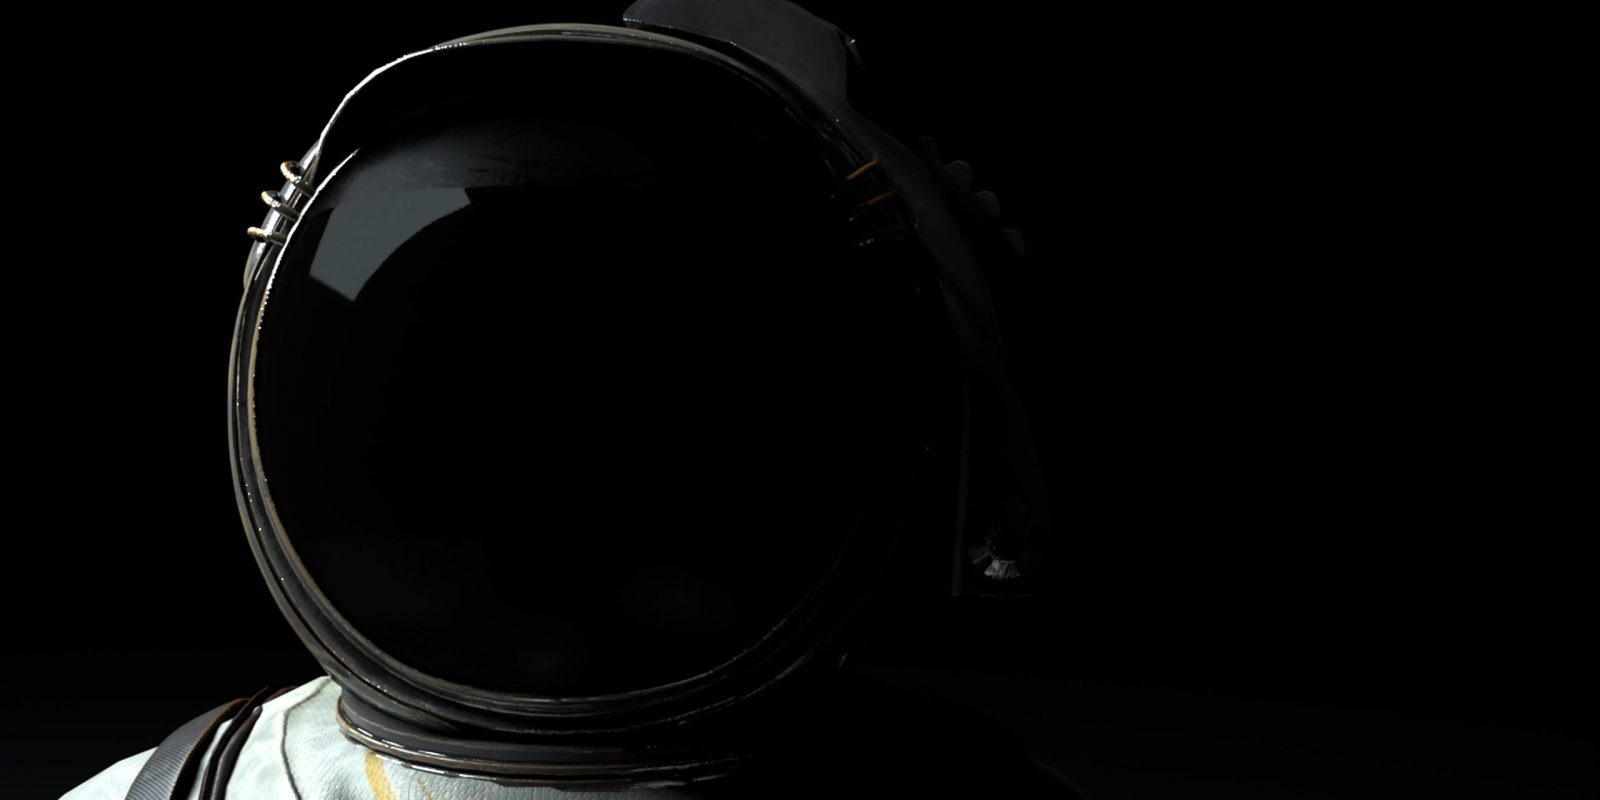 Gros plan sur un cosmonaute dont seul le casque et le haut des épaules sont visibles. Le fond est noir et rappelle l'absence de lumière dans l'espace. Mission Moon Rocks III prête à être lancée !